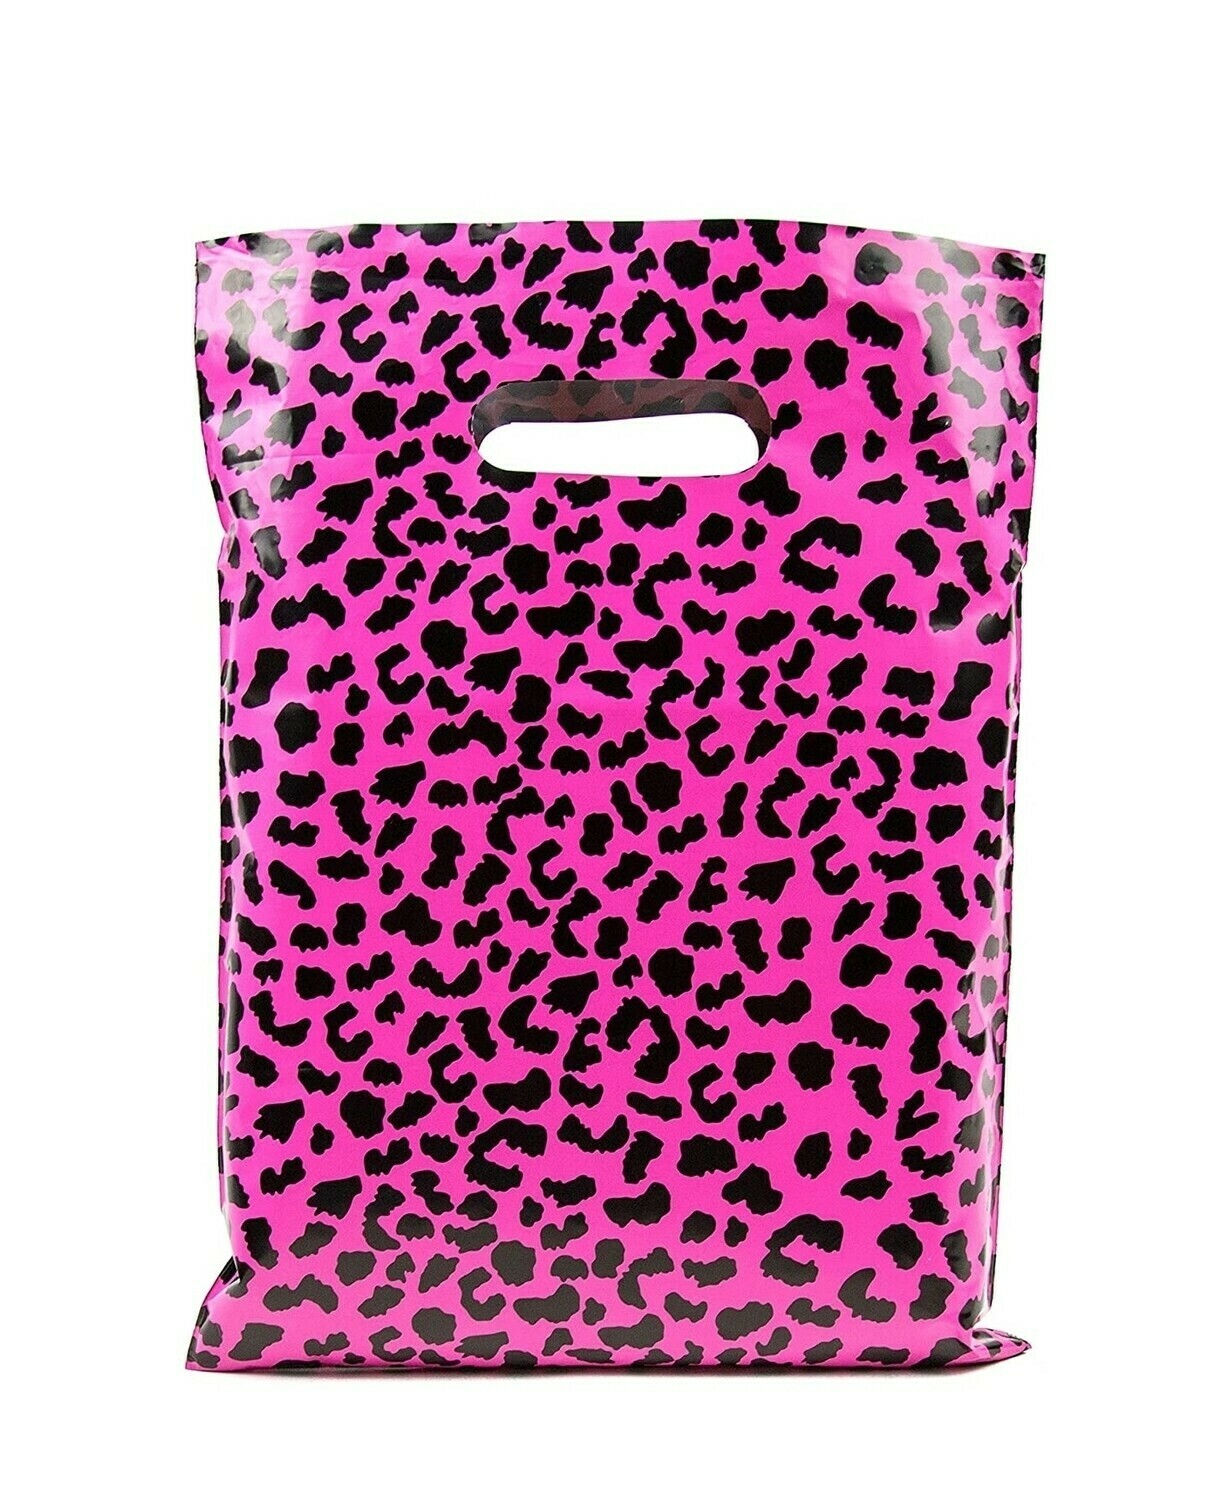 Merchandise Bags 15x18 - Hot Pink Cheetah